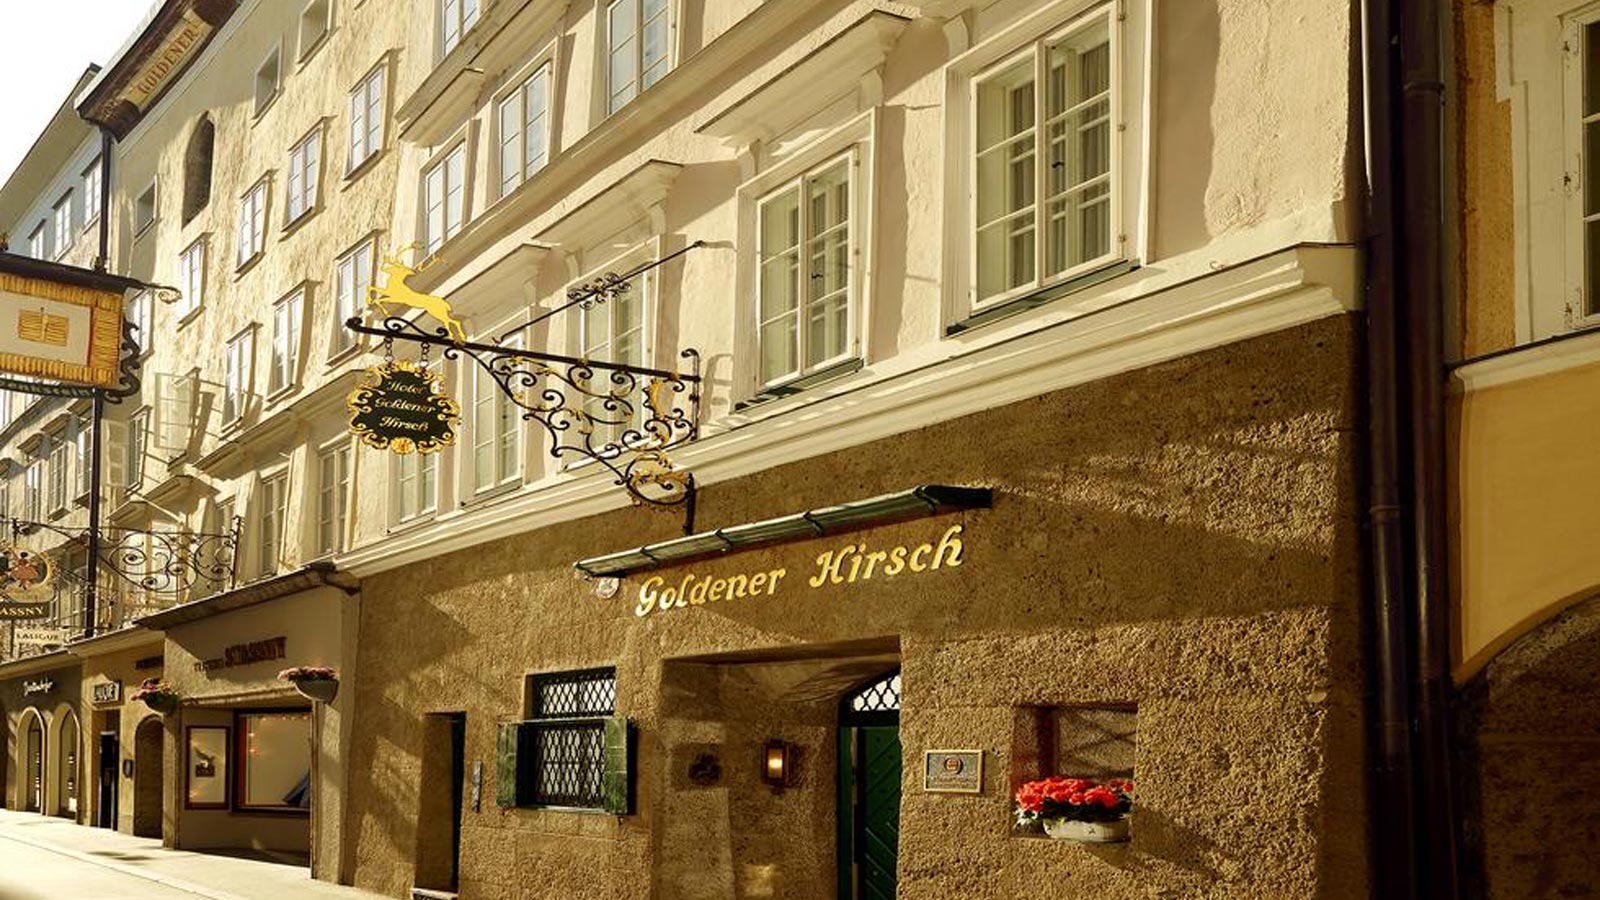 Aussenansicht-Hotel-golder-Hirsch-Salzburg-2